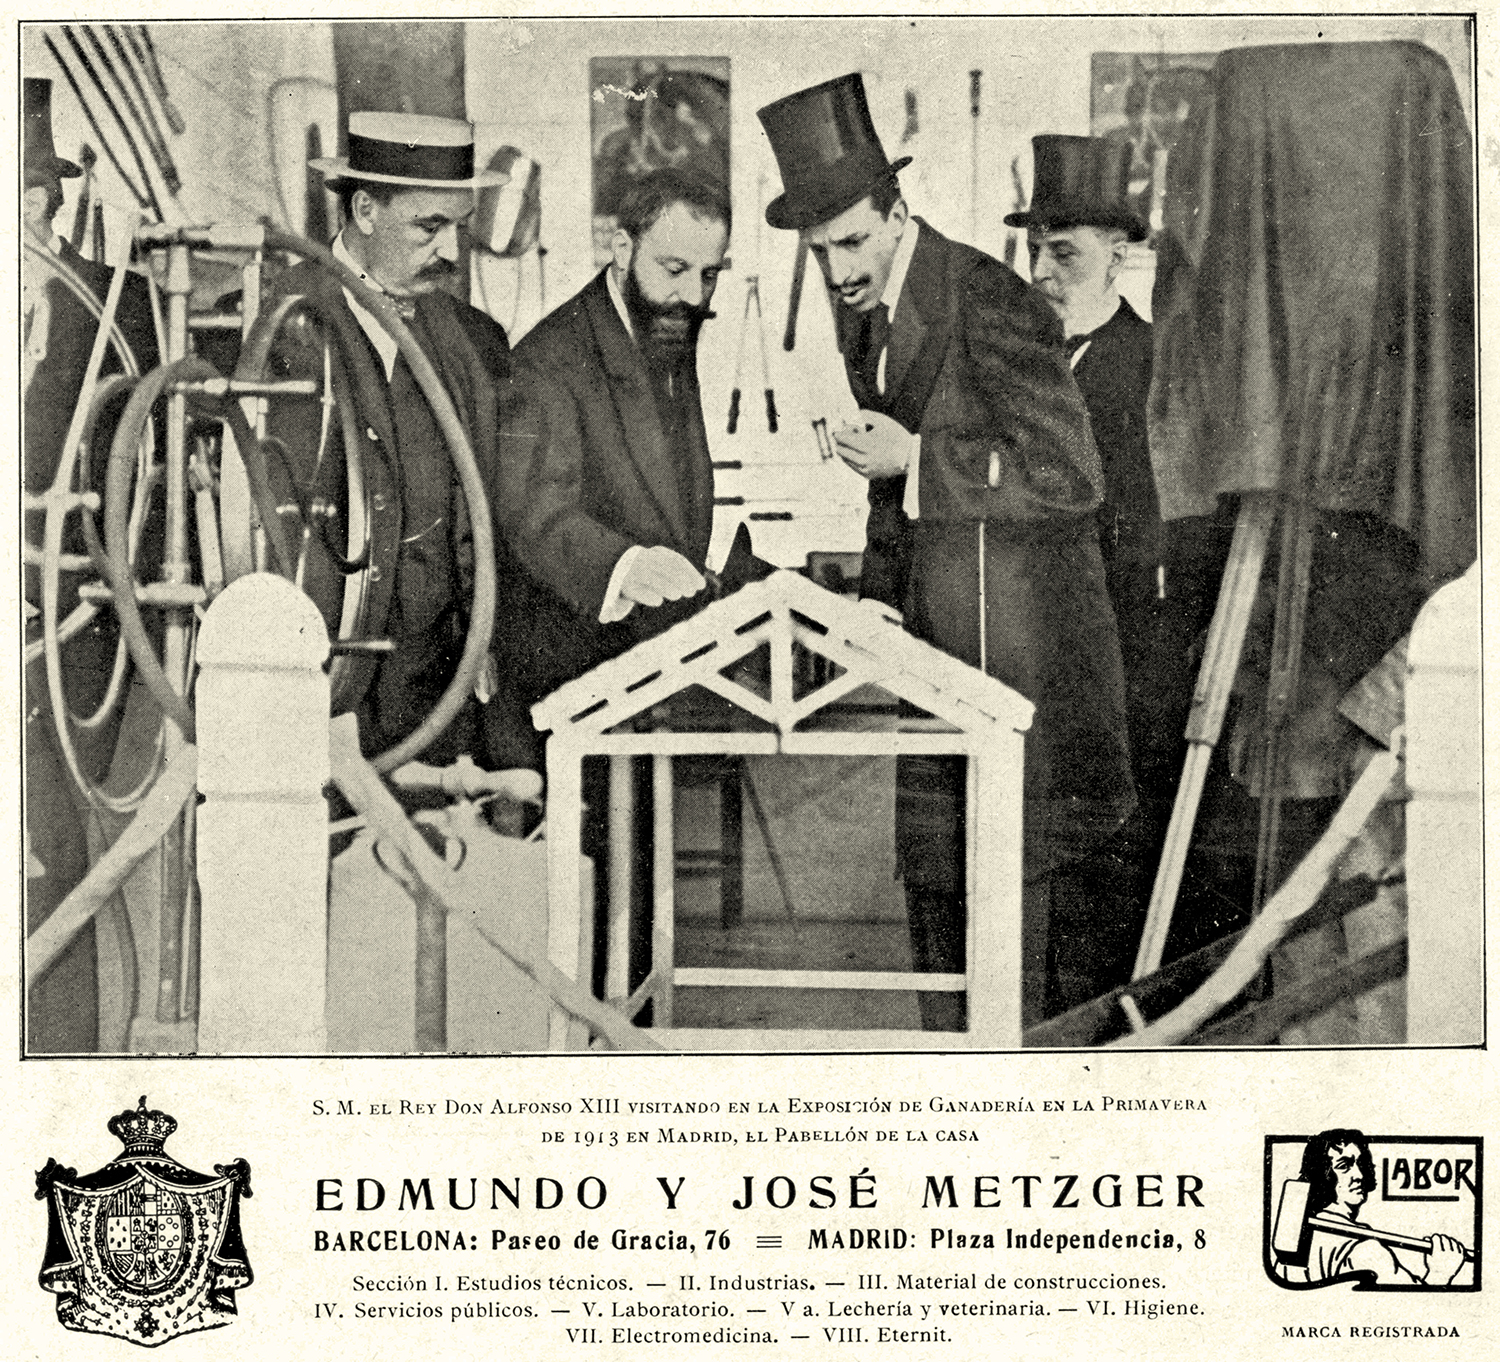 Fotografia dels germans Metzger (jueus suissos) presentant els seus productes al rei Alfons XIII. Font European Observatory of Memories